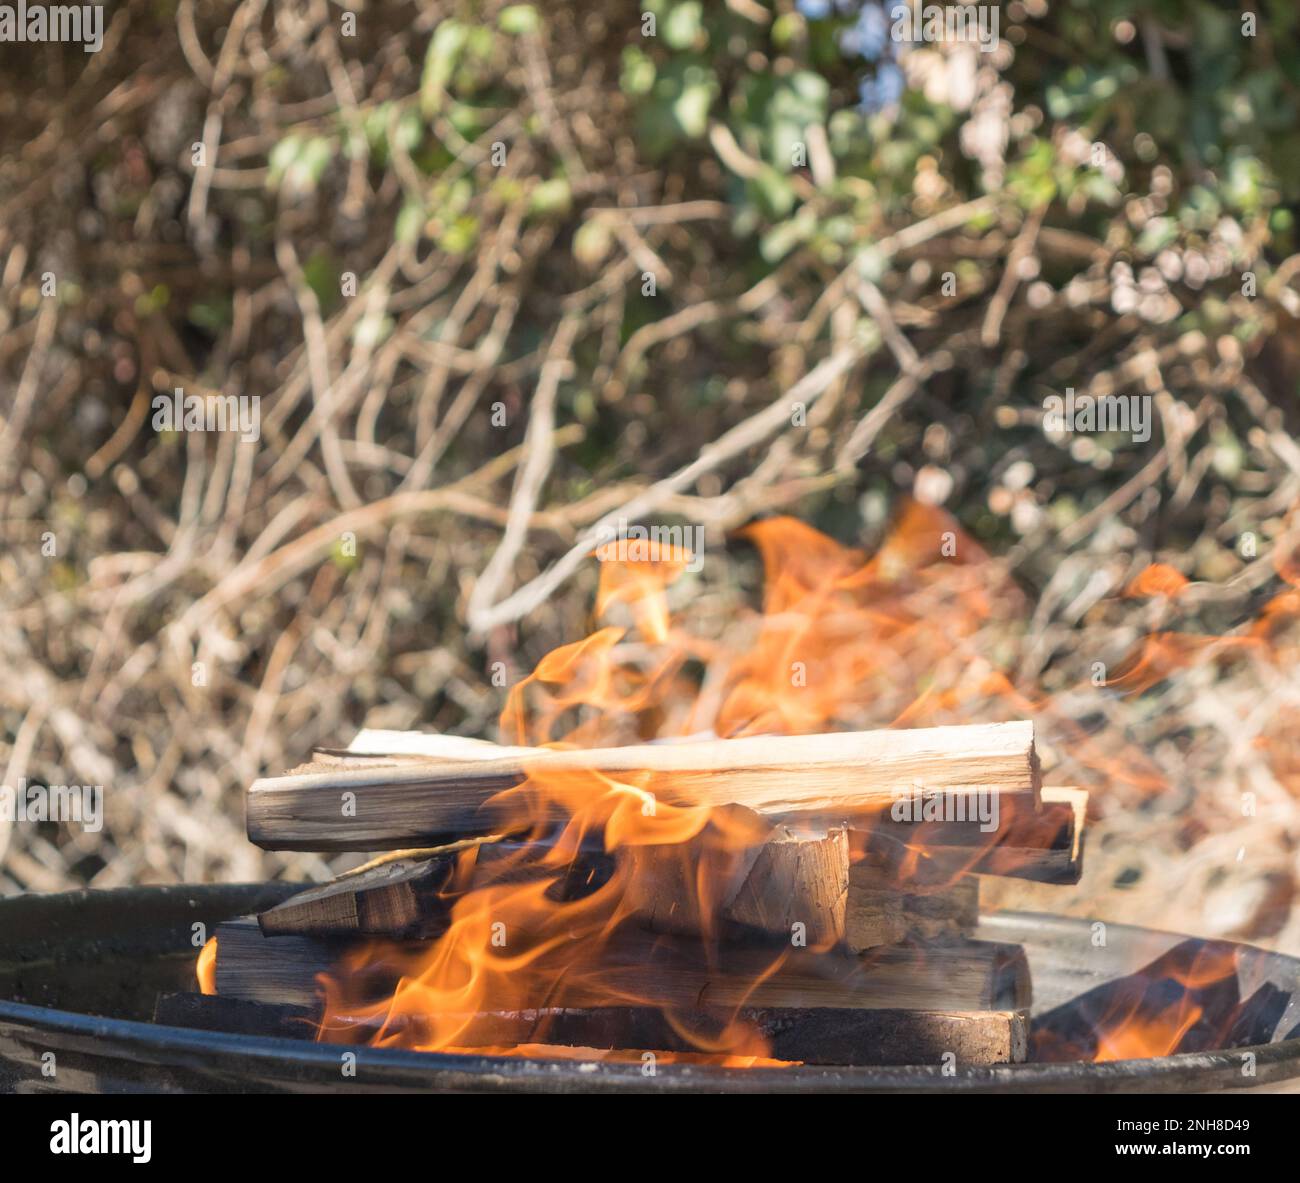 grigliate barbecue in legno sul fuoco Foto Stock